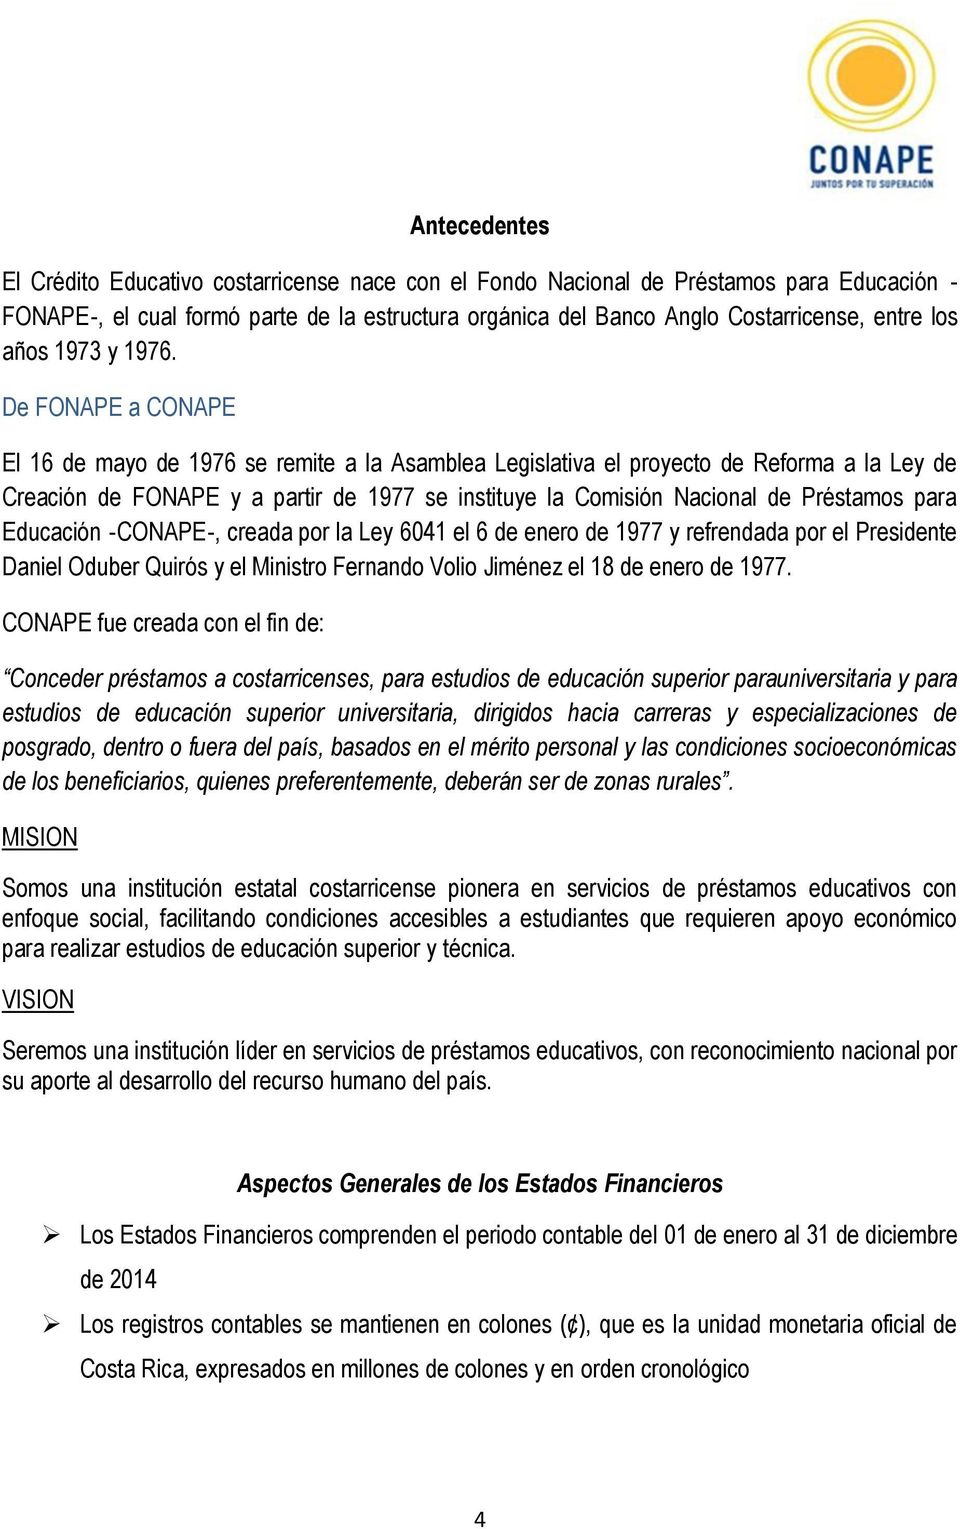 De FONAPE a CONAPE El 16 de mayo de 176 se remite a la Asamblea Legislativa el proyecto de Reforma a la Ley de Creación de FONAPE y a partir de 177 se instituye la Comisión Nacional de Préstamos para